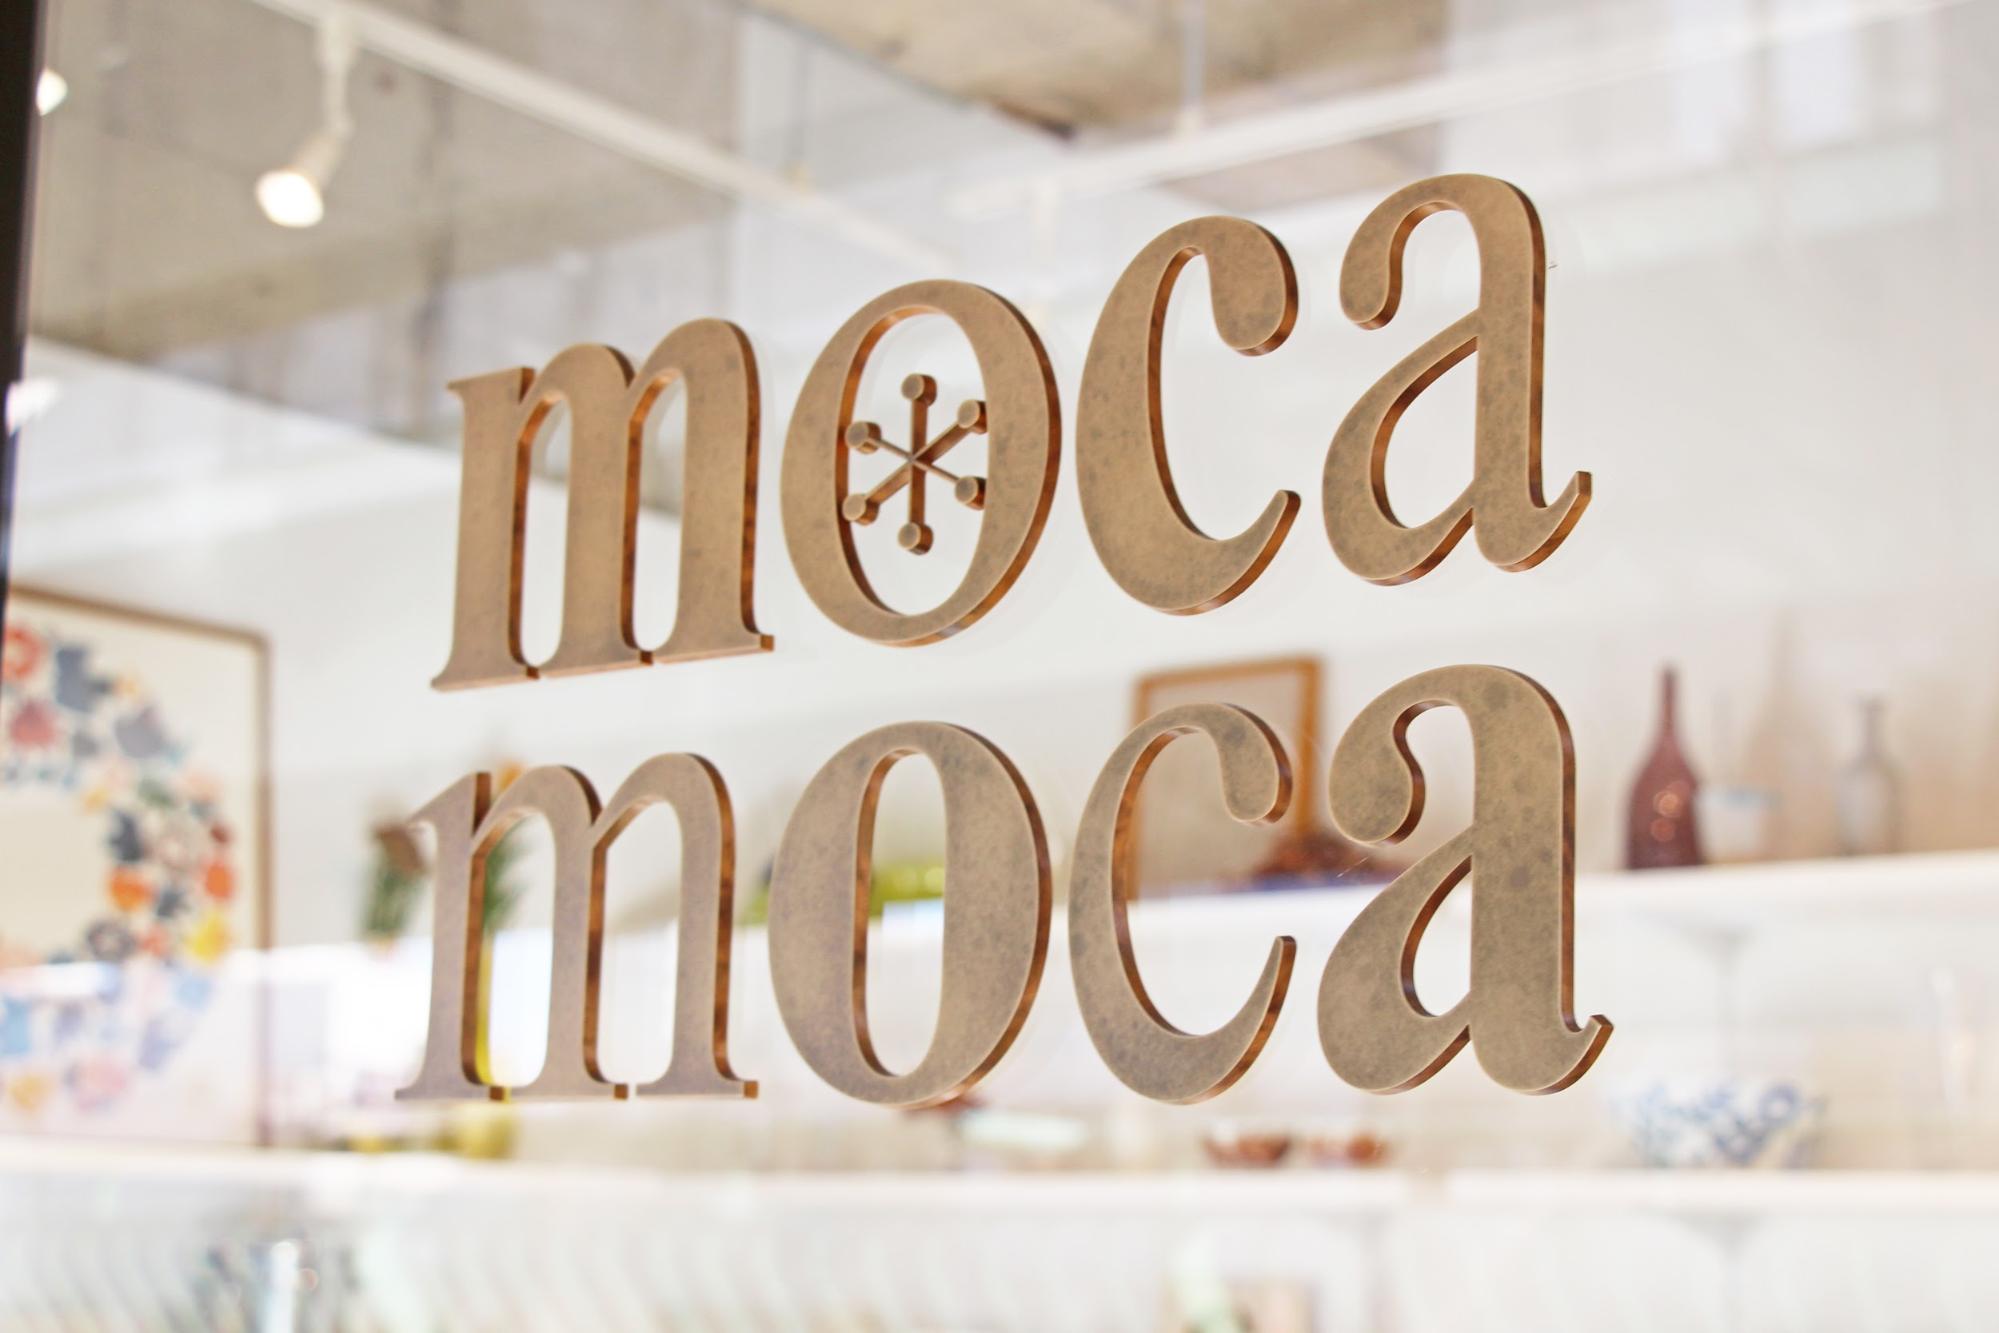 select shop mocamoca